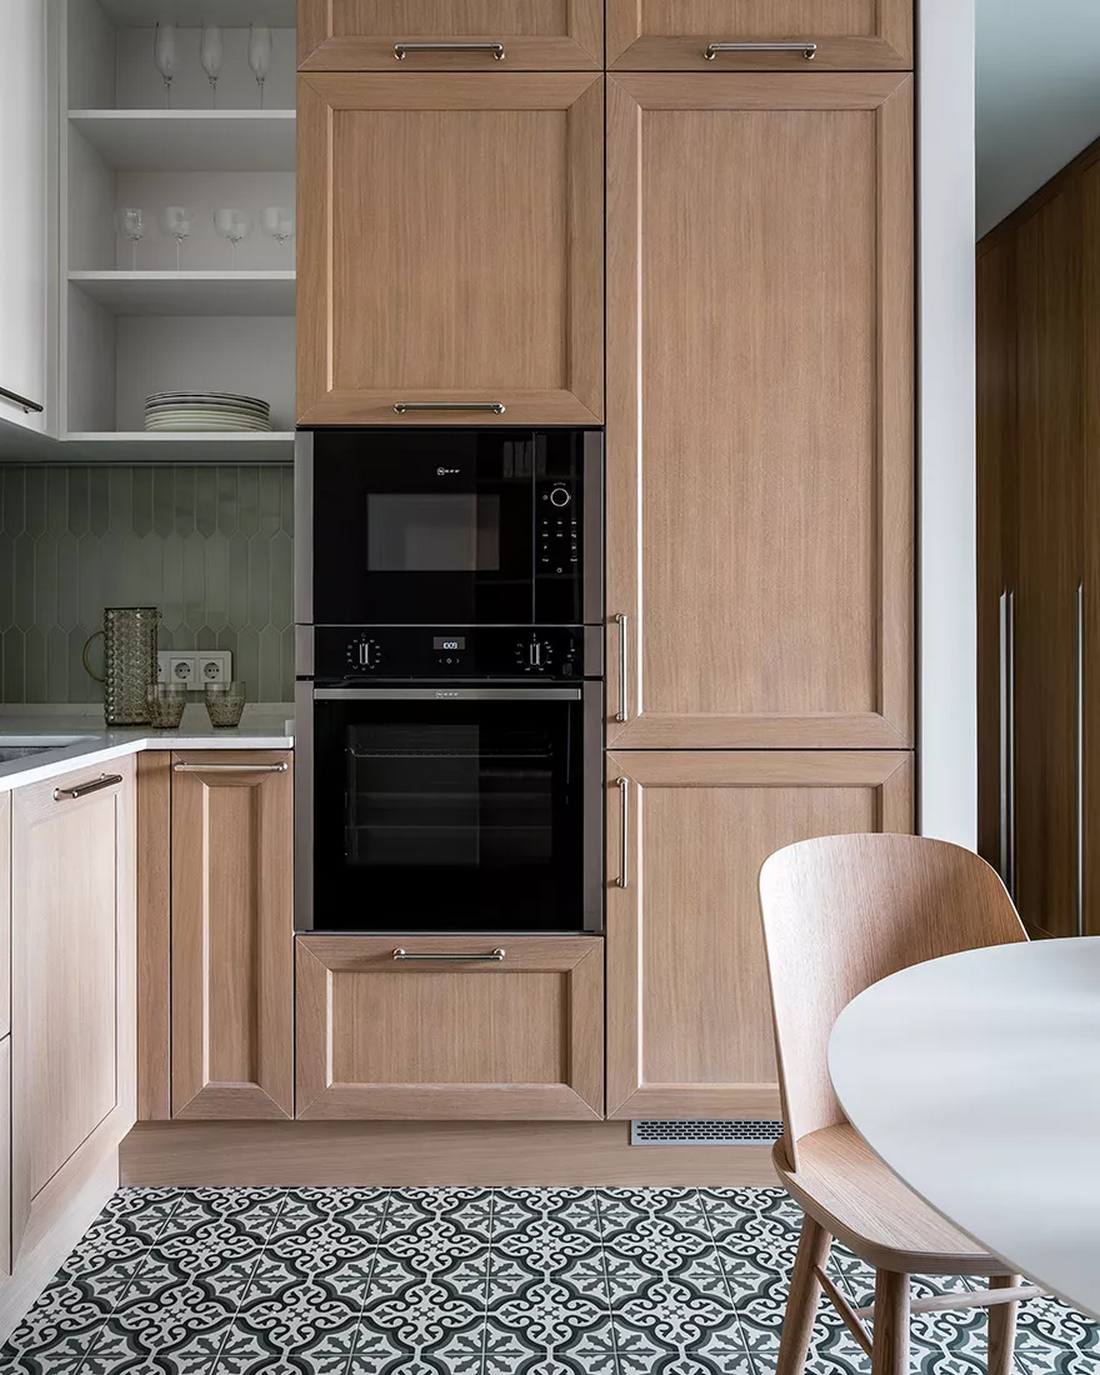 Tủ bếp được thiết kế kiểu chữ L vừa phù hợp với cấu trúc căn hộ vừa tiết kiệm diện tích cho những không gian vừa và nhỏ. Hệ thống tủ gỗ sáng màu tạo sự tương phản nhẹ nhàng với tủ bếp trên màu be và gạch ốp backsplash màu xám nhạt.